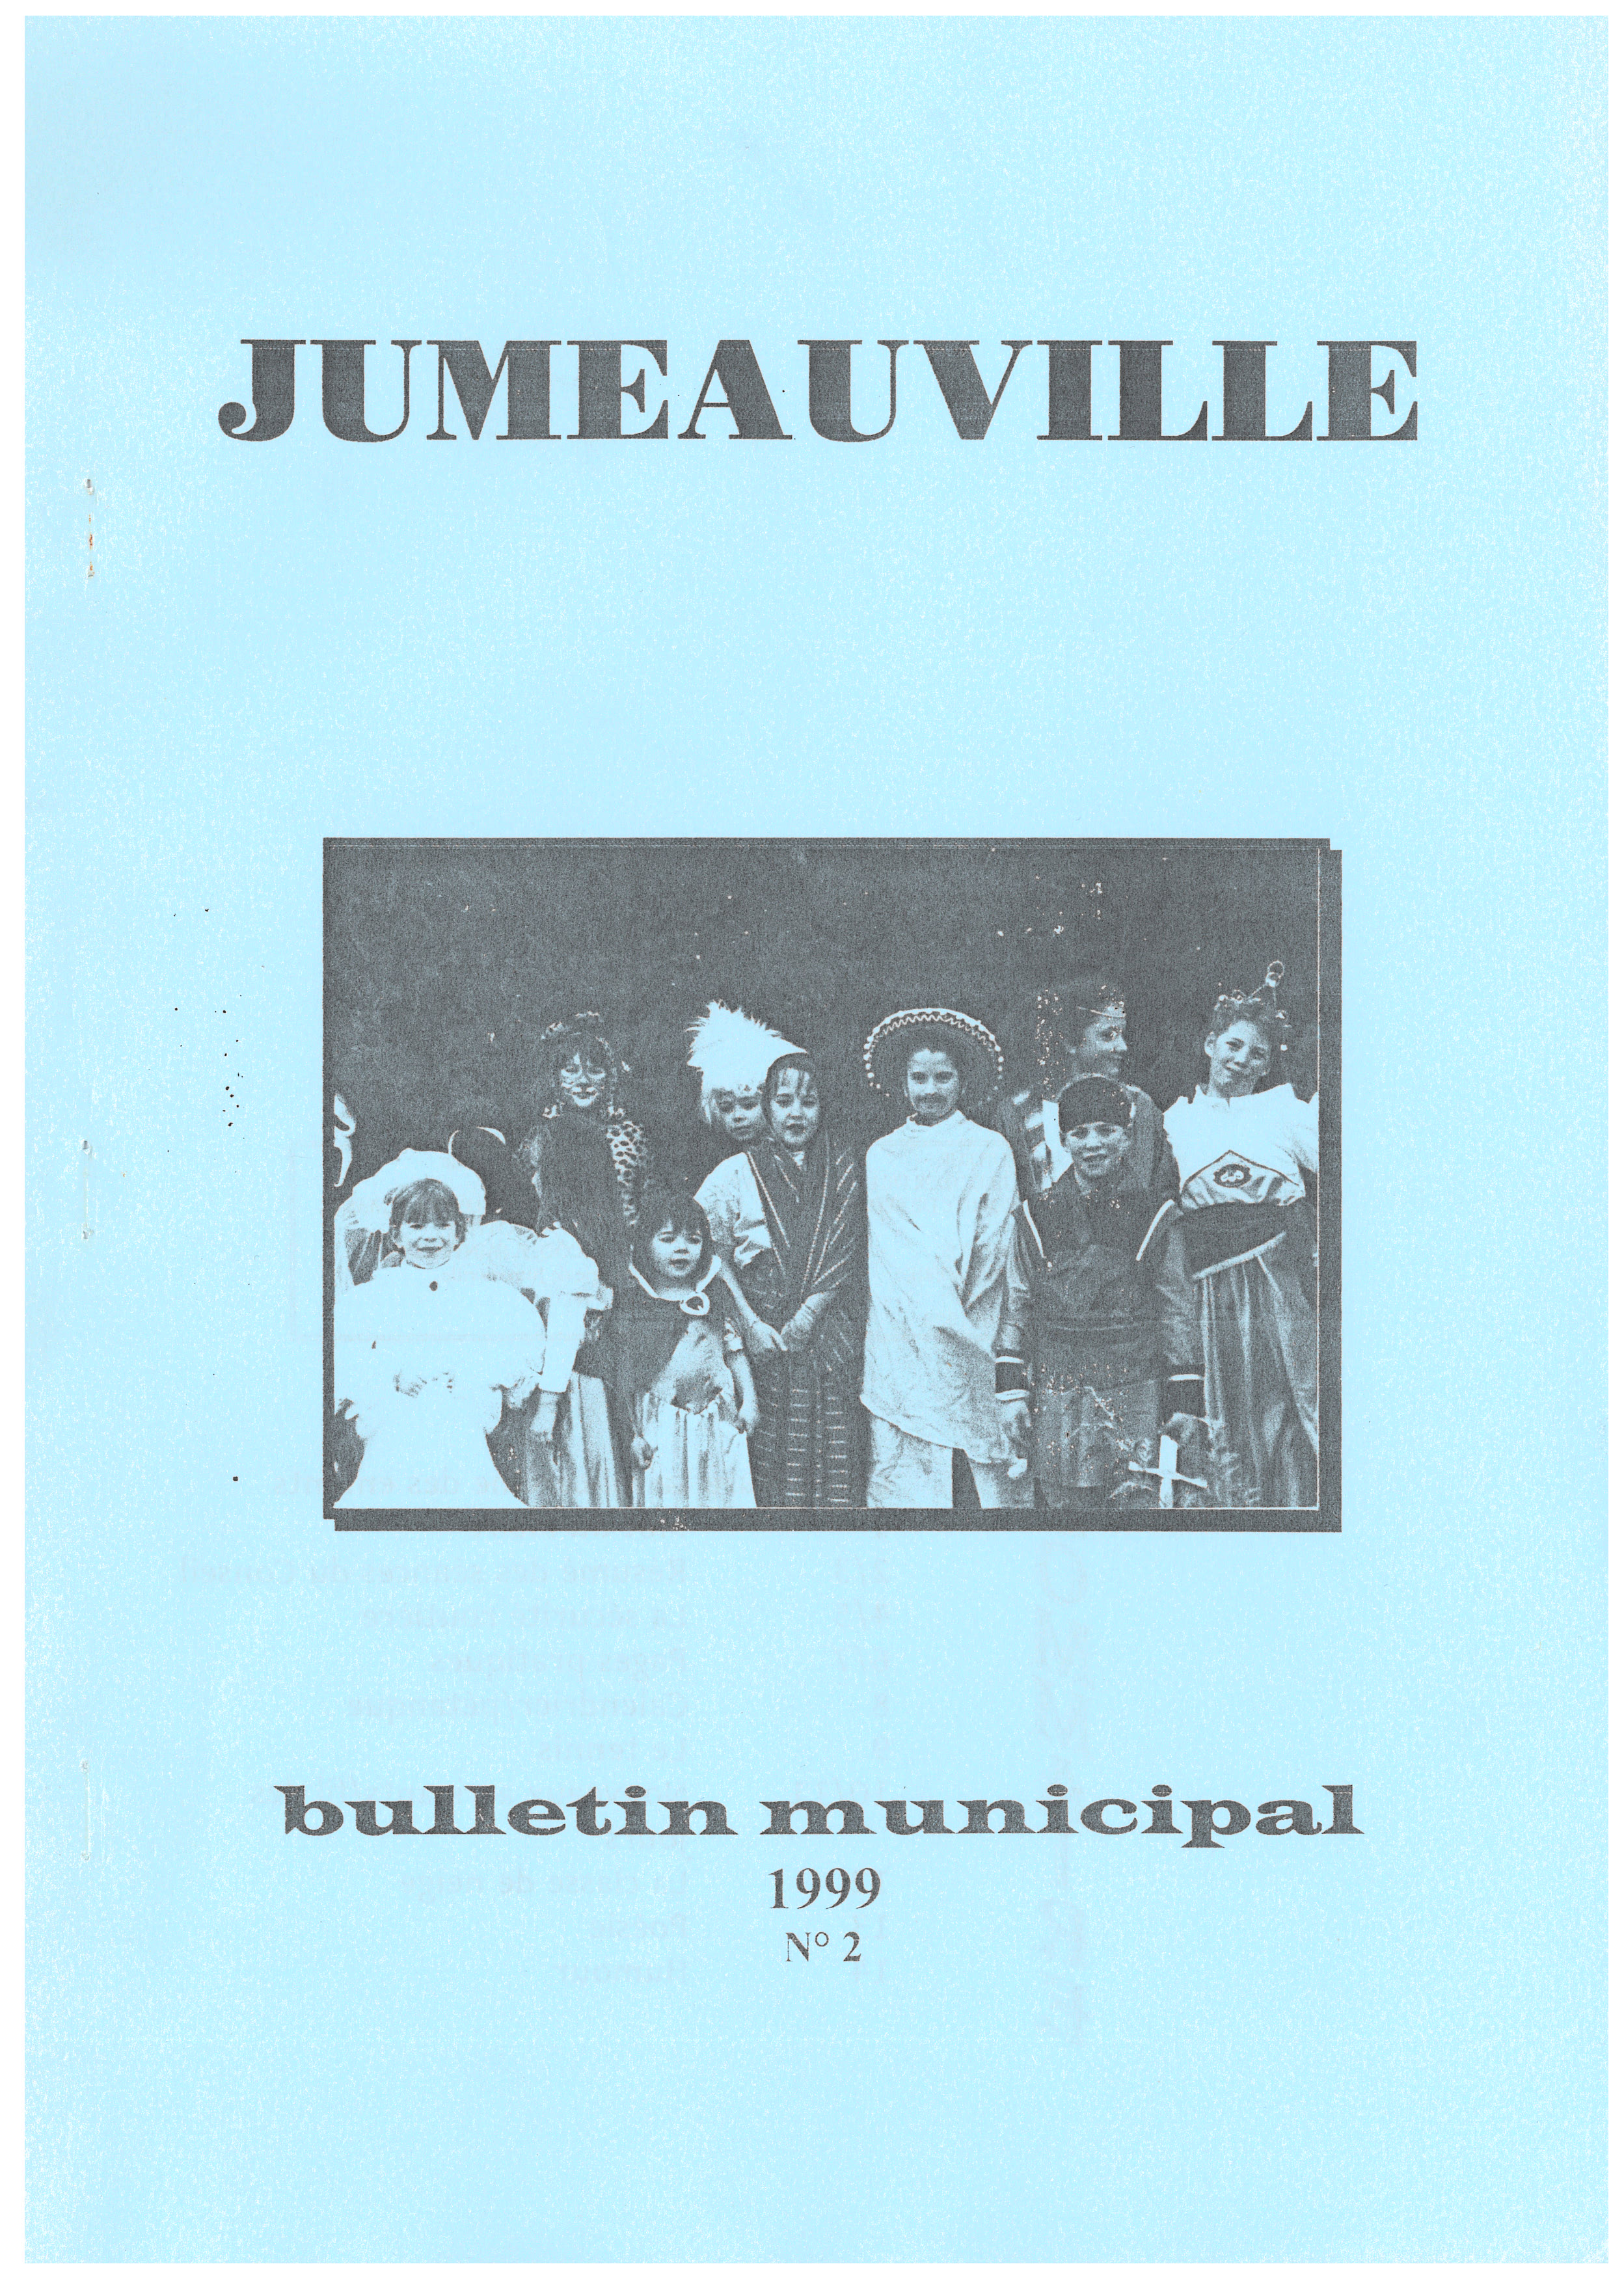 Bulletin Municipal 2 1999